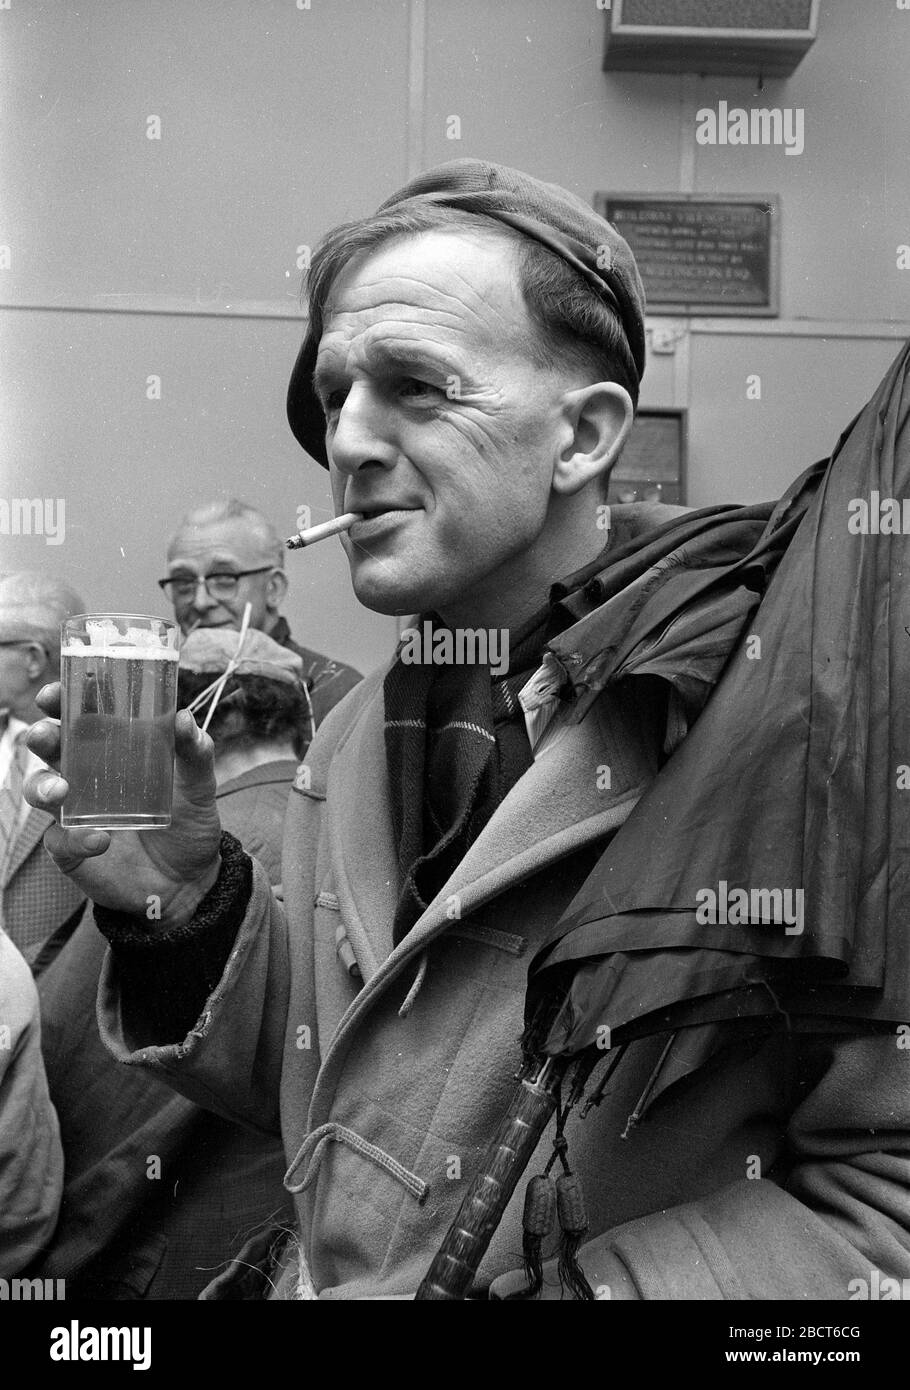 Homme avec cigarette dans sa bouche au Rotary Club trams souper 1967 Banque D'Images